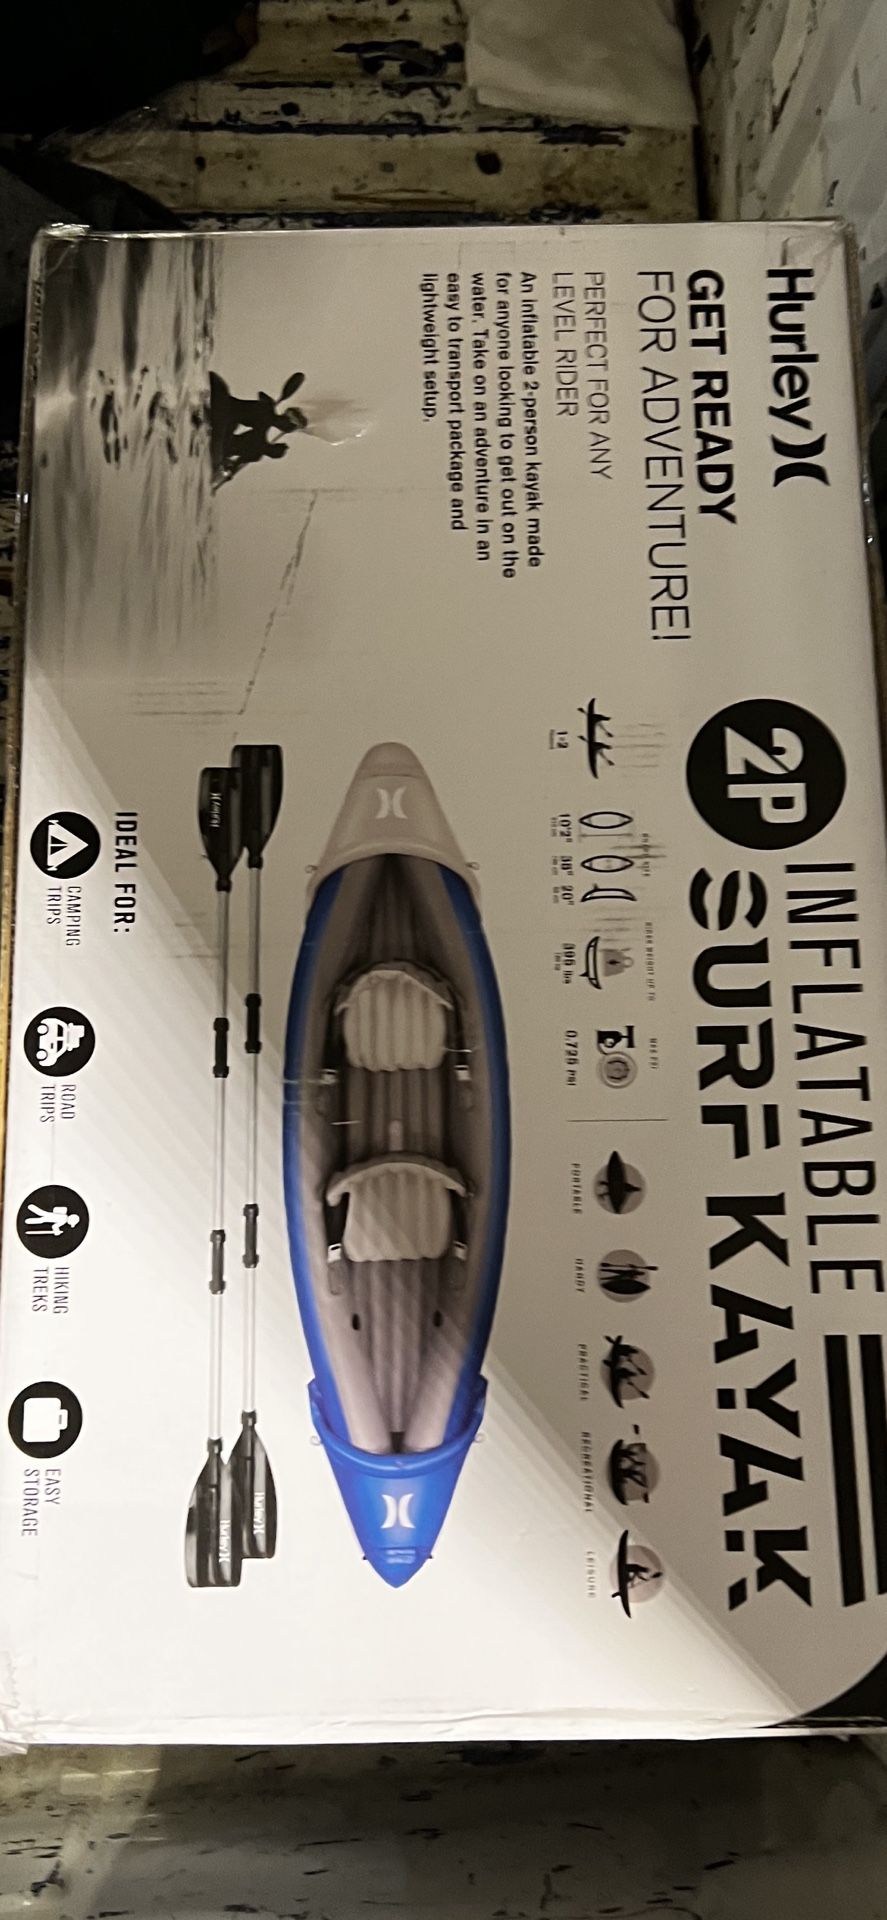 Brand New Inflatable Kayak 